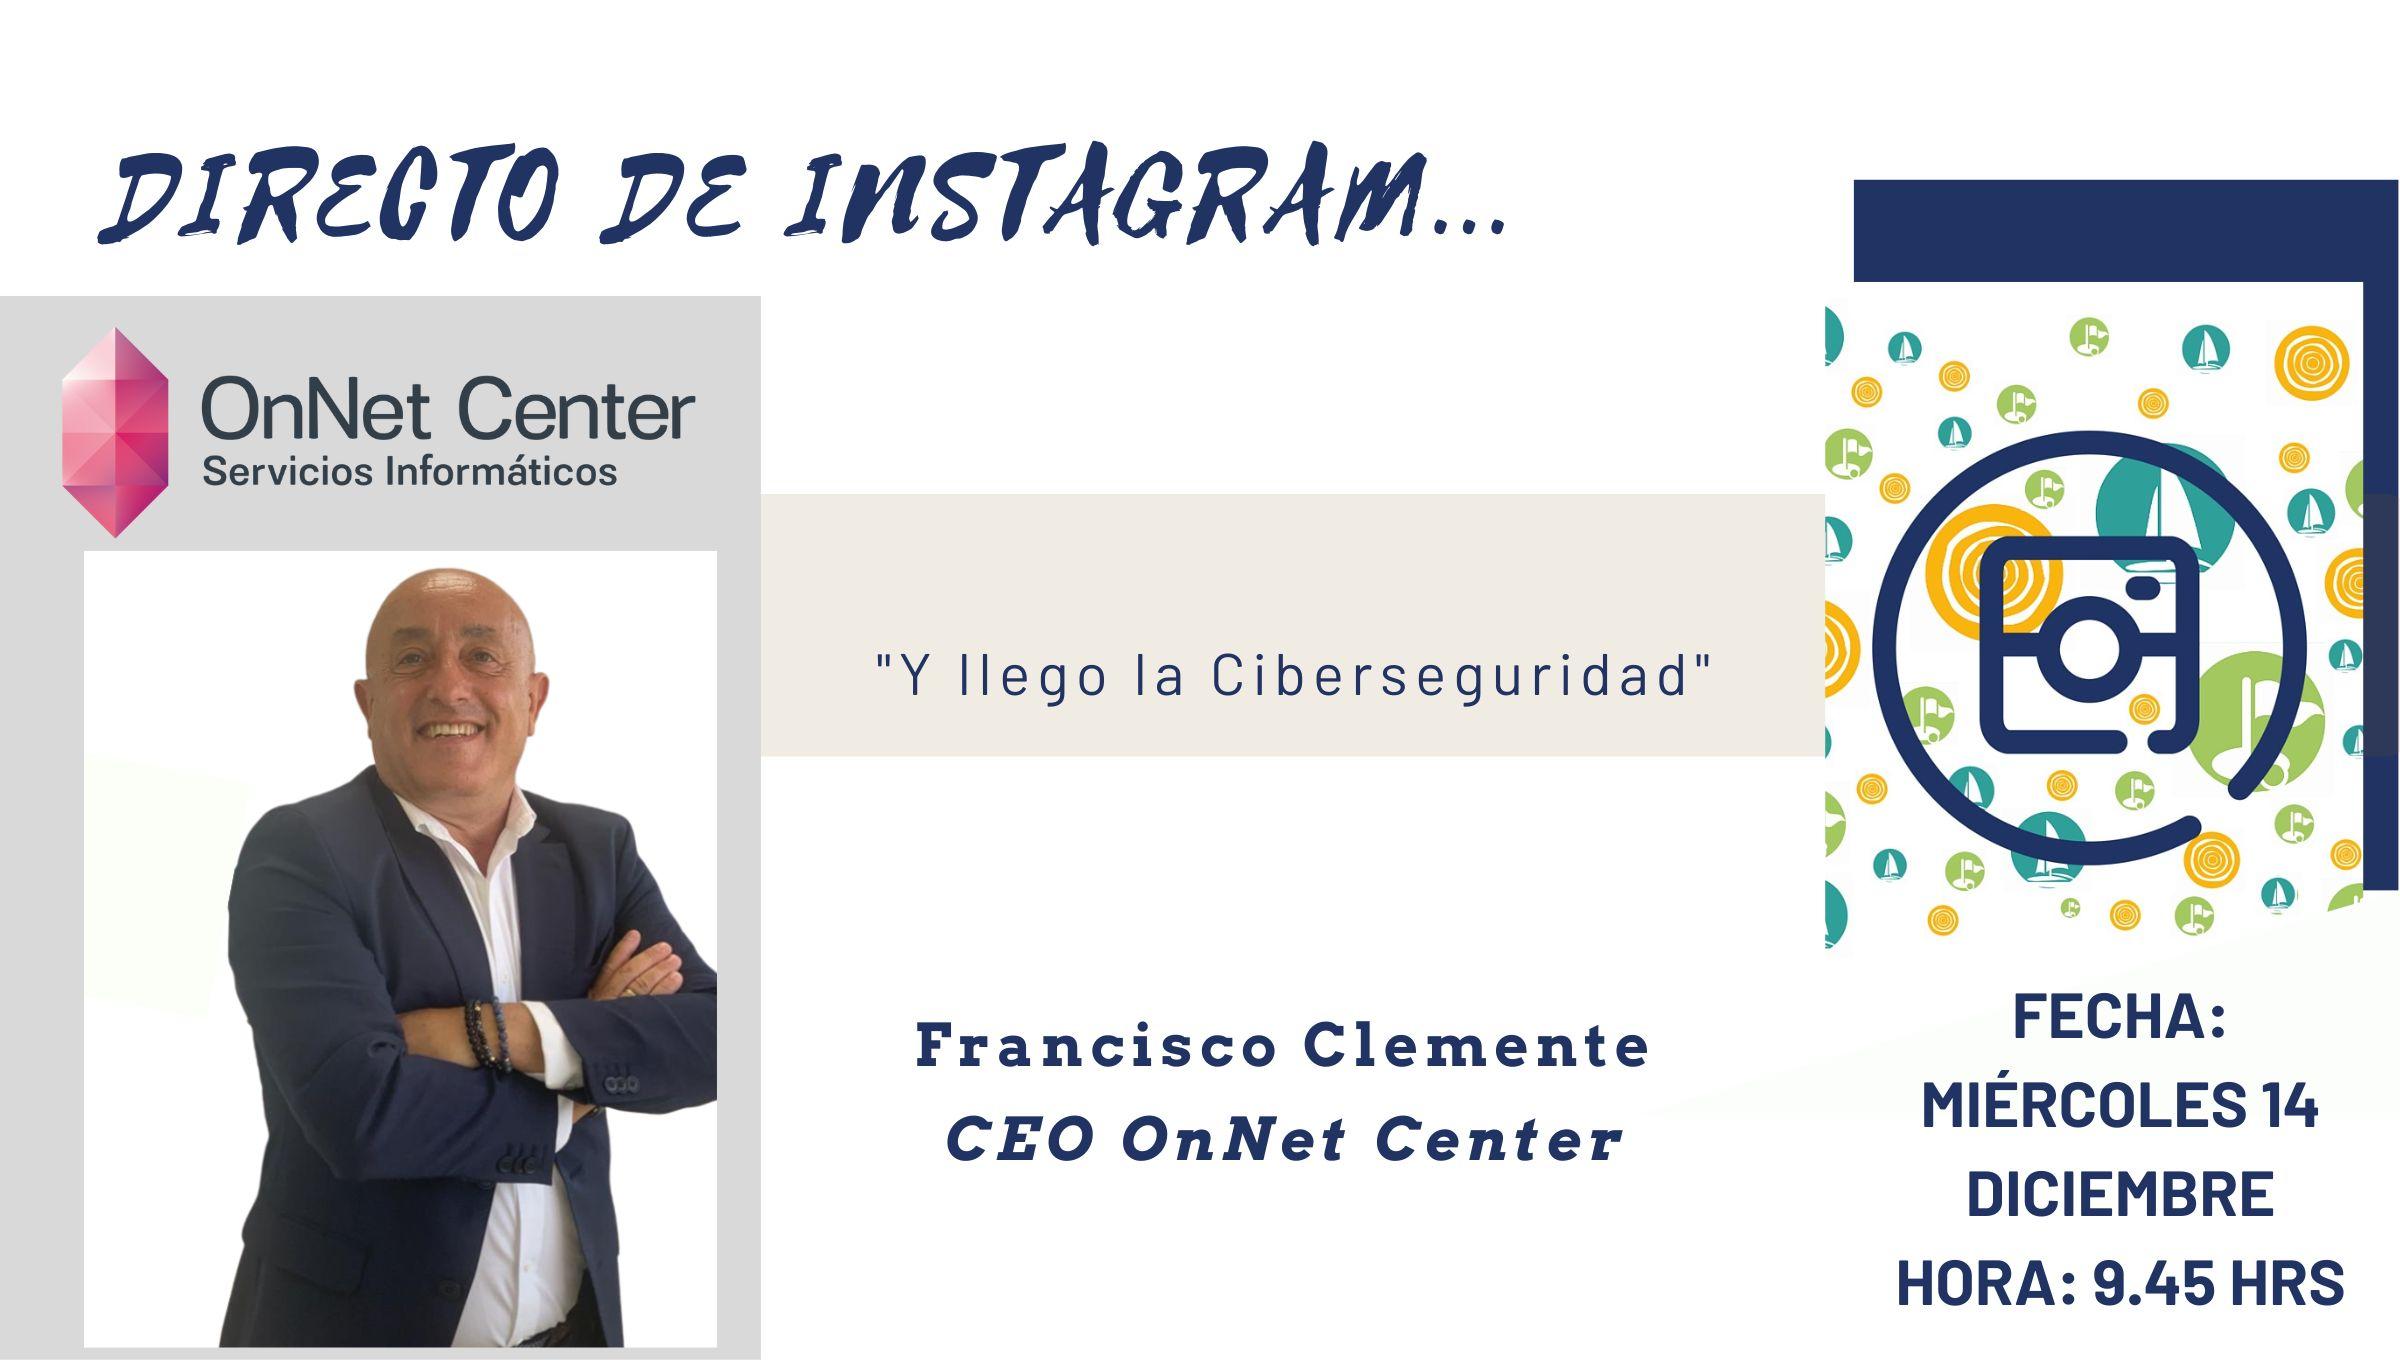 Directo de Instagram con Francisco Clemente sobre Ciberseguridad